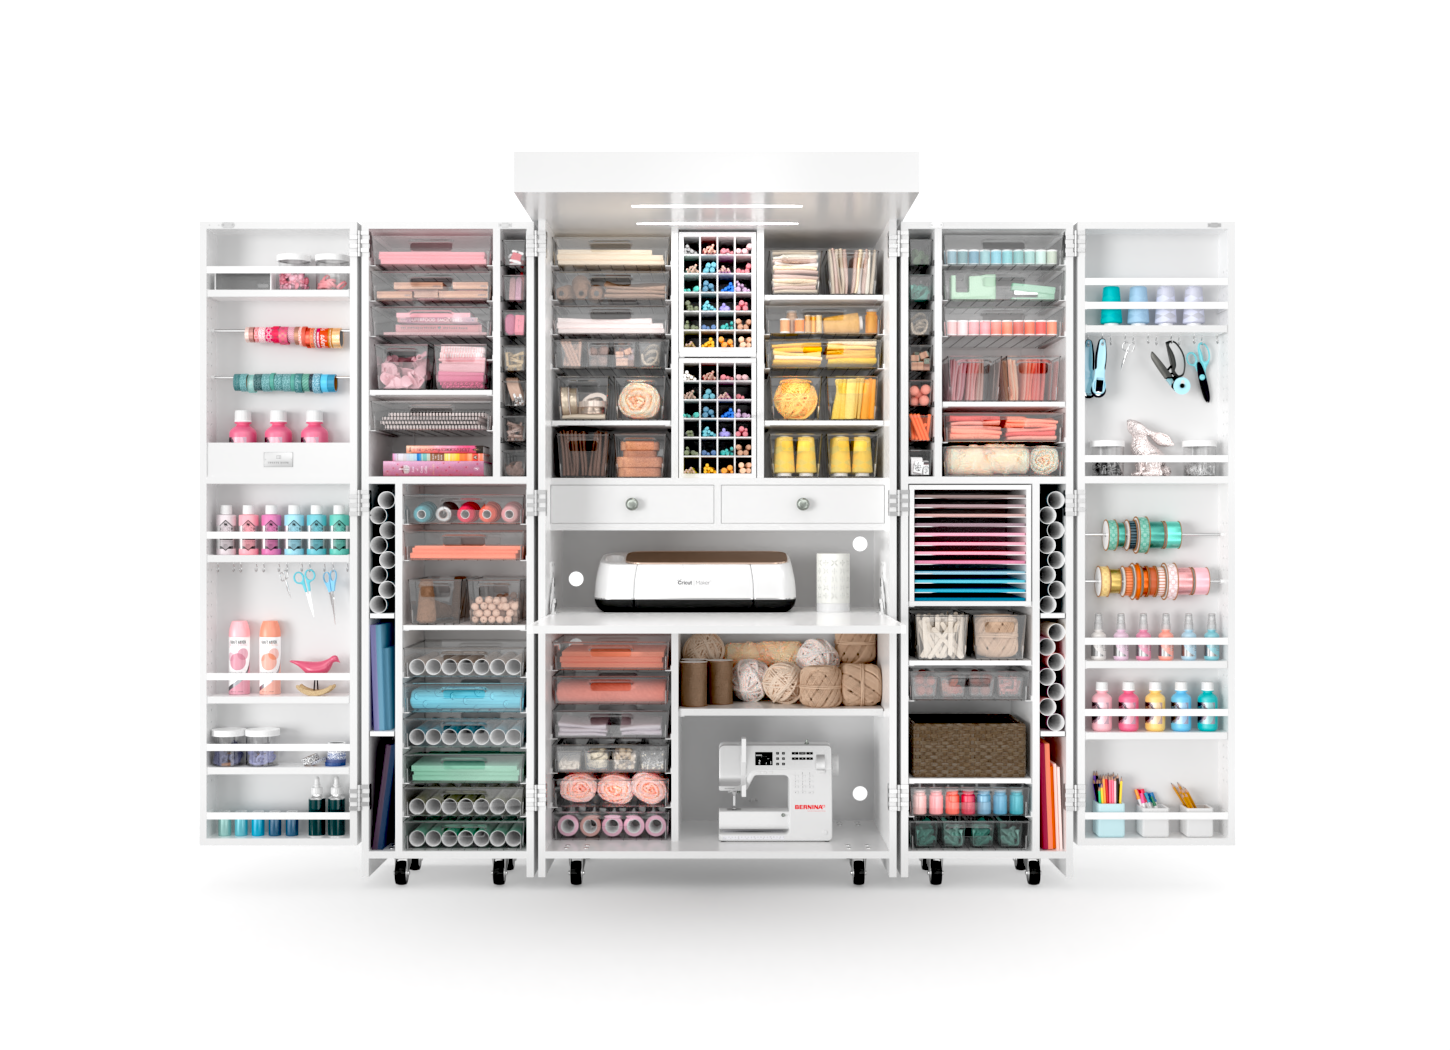 Carousel Paint Storage Rack for 48 Paints -   Paint storage, Laser cut  wood crafts, Paint rack